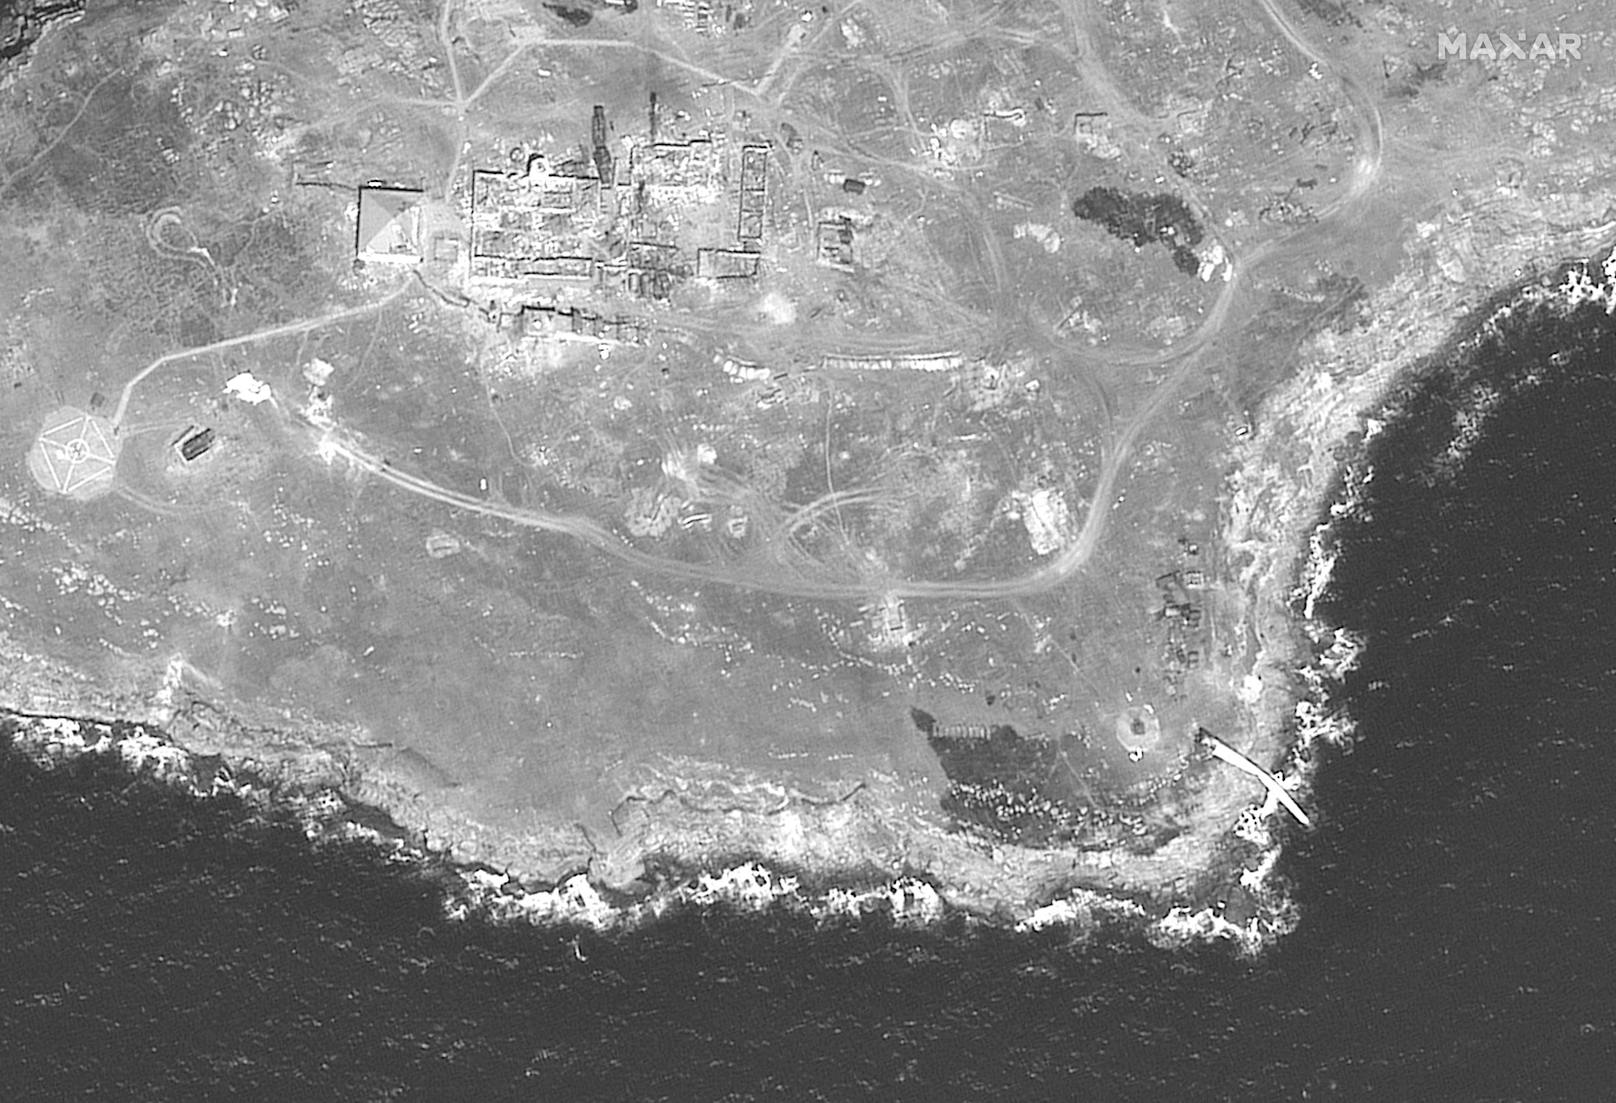 Am 21. Juni sollen ukrainische Artillerie und Drohnen einen Angriff auf die okkupierte Schlangeninsel durchgeführt haben.